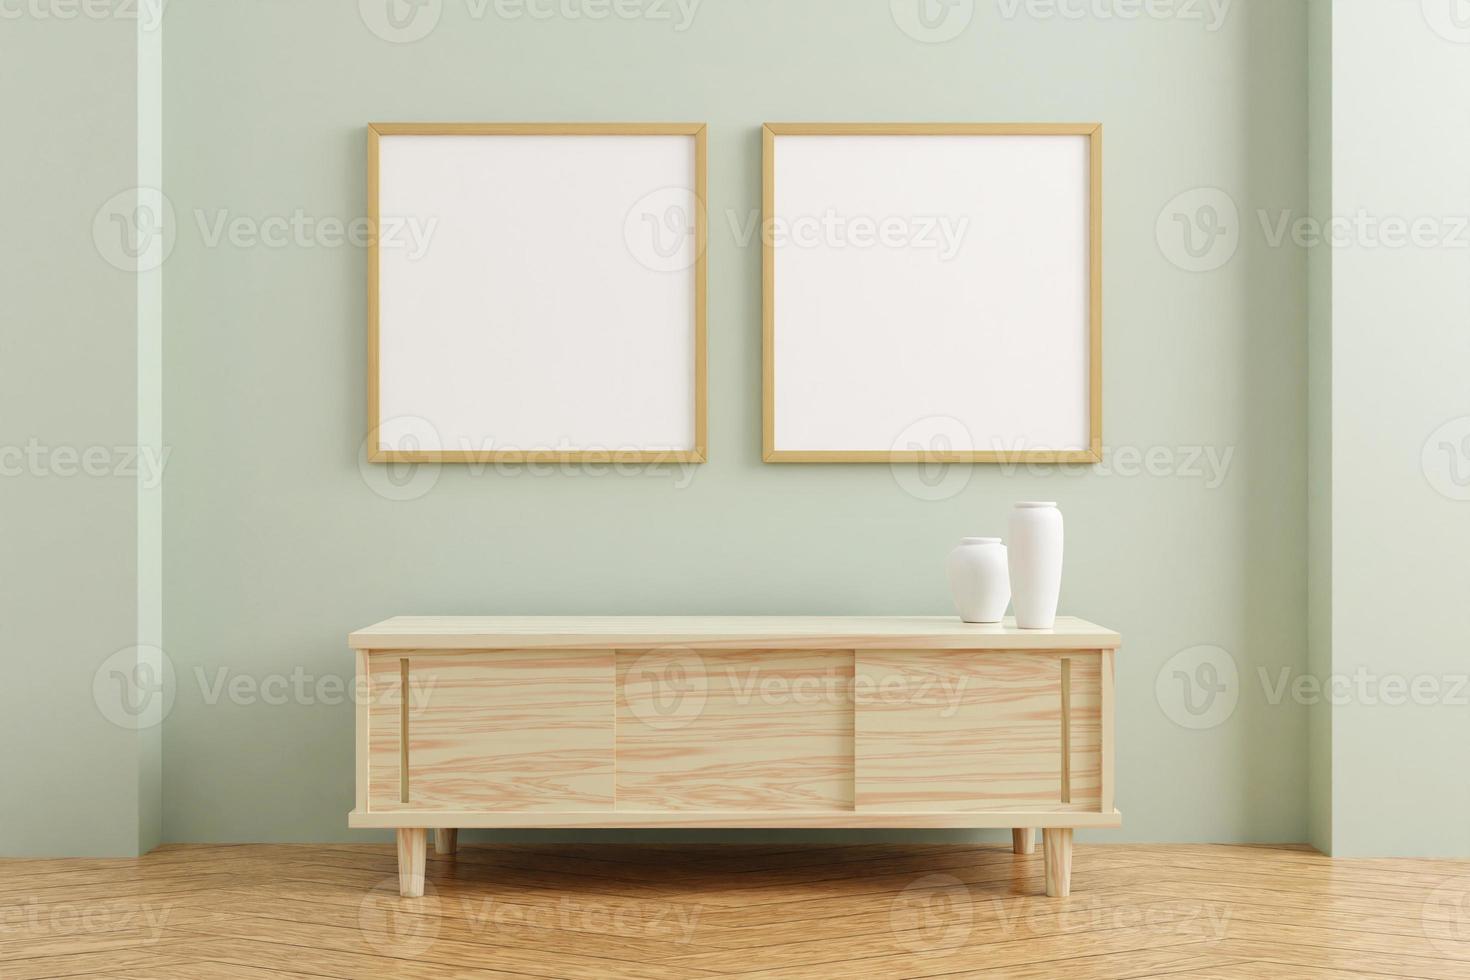 twee vierkante houten poster frame mockup op houten tafel in woonkamer interieur op lege pastel kleur muur achtergrond. 3D-rendering. foto